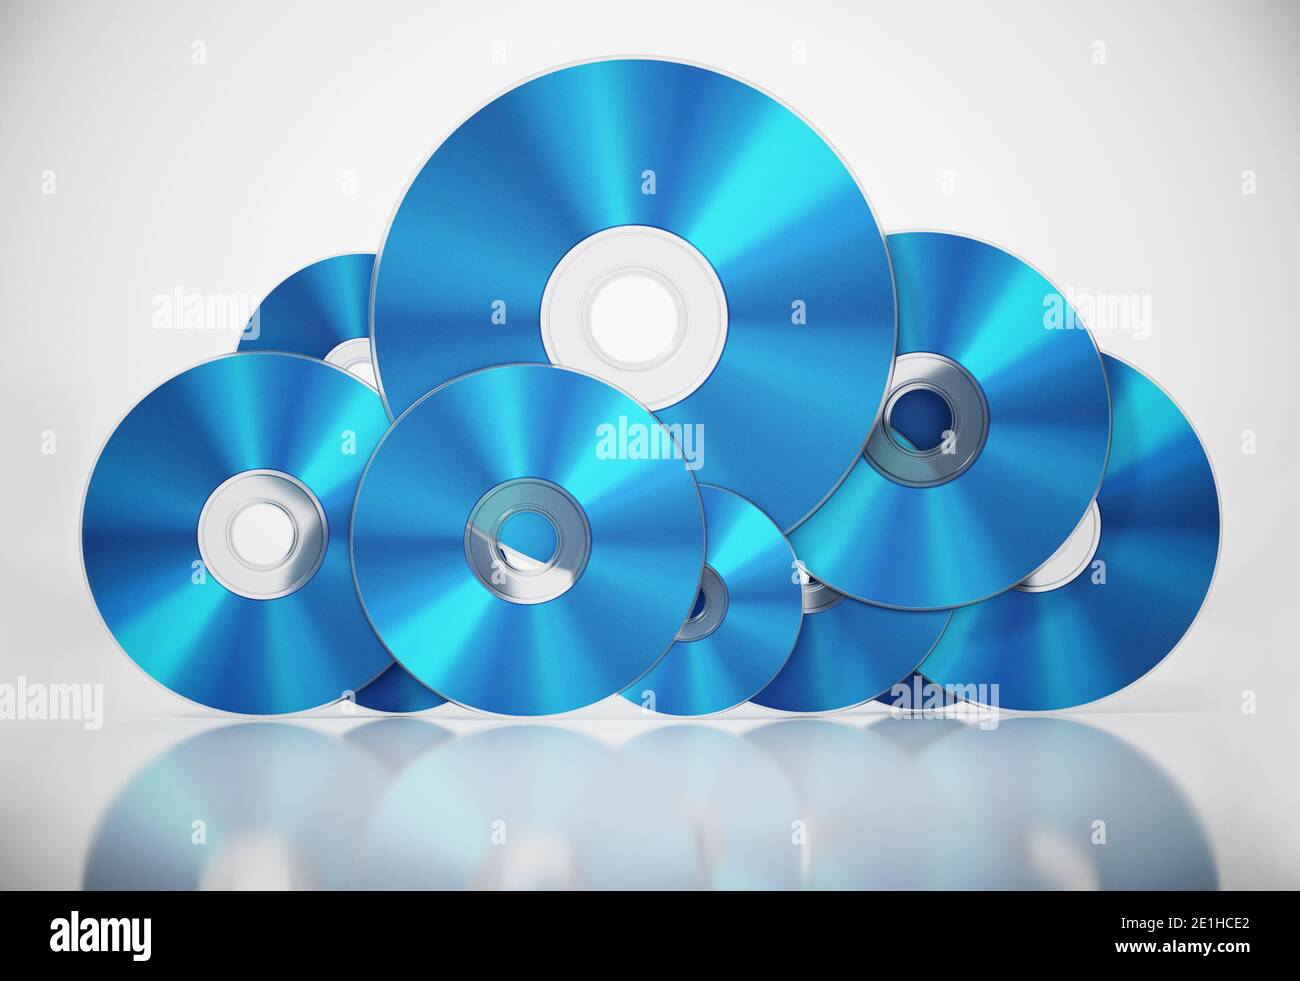 BluRay-Discs als Wolkensymbol angeordnet. Datenspeicherkonzept. 3D-Illustration. Stockfoto